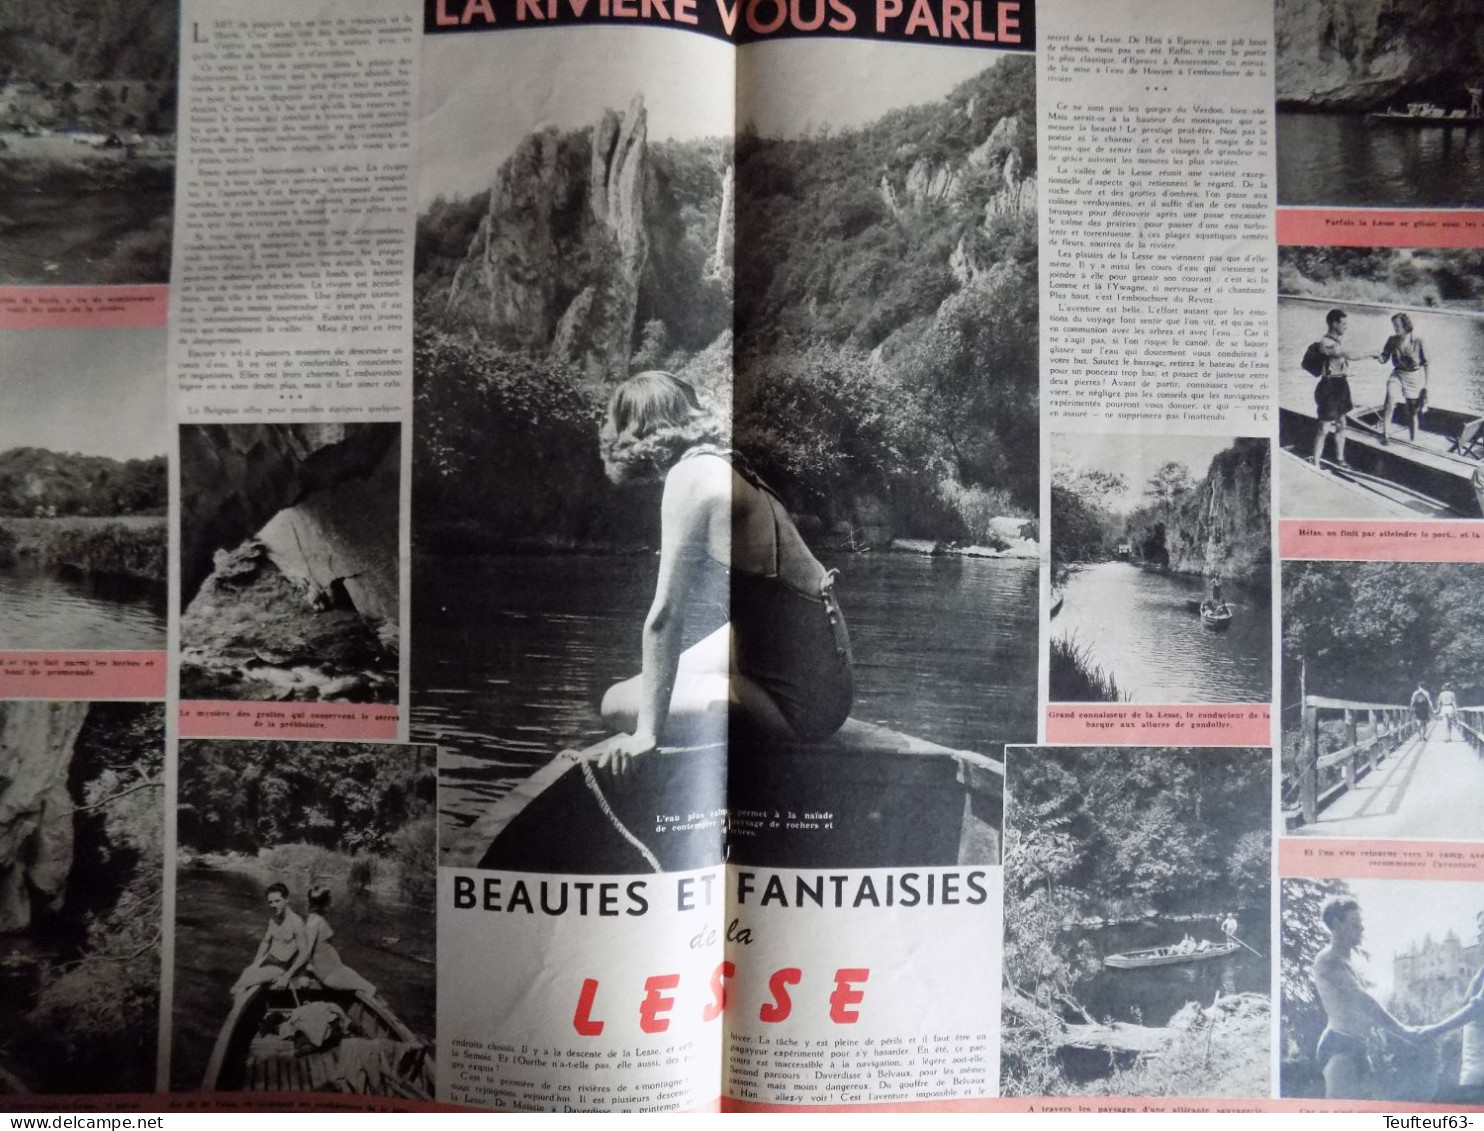 Le soir illustré n° 889 Jean Simmons - Fausto Coppi - Tour de France - la Lesse - affaire Lafarge - Mao-Tse-Tung...